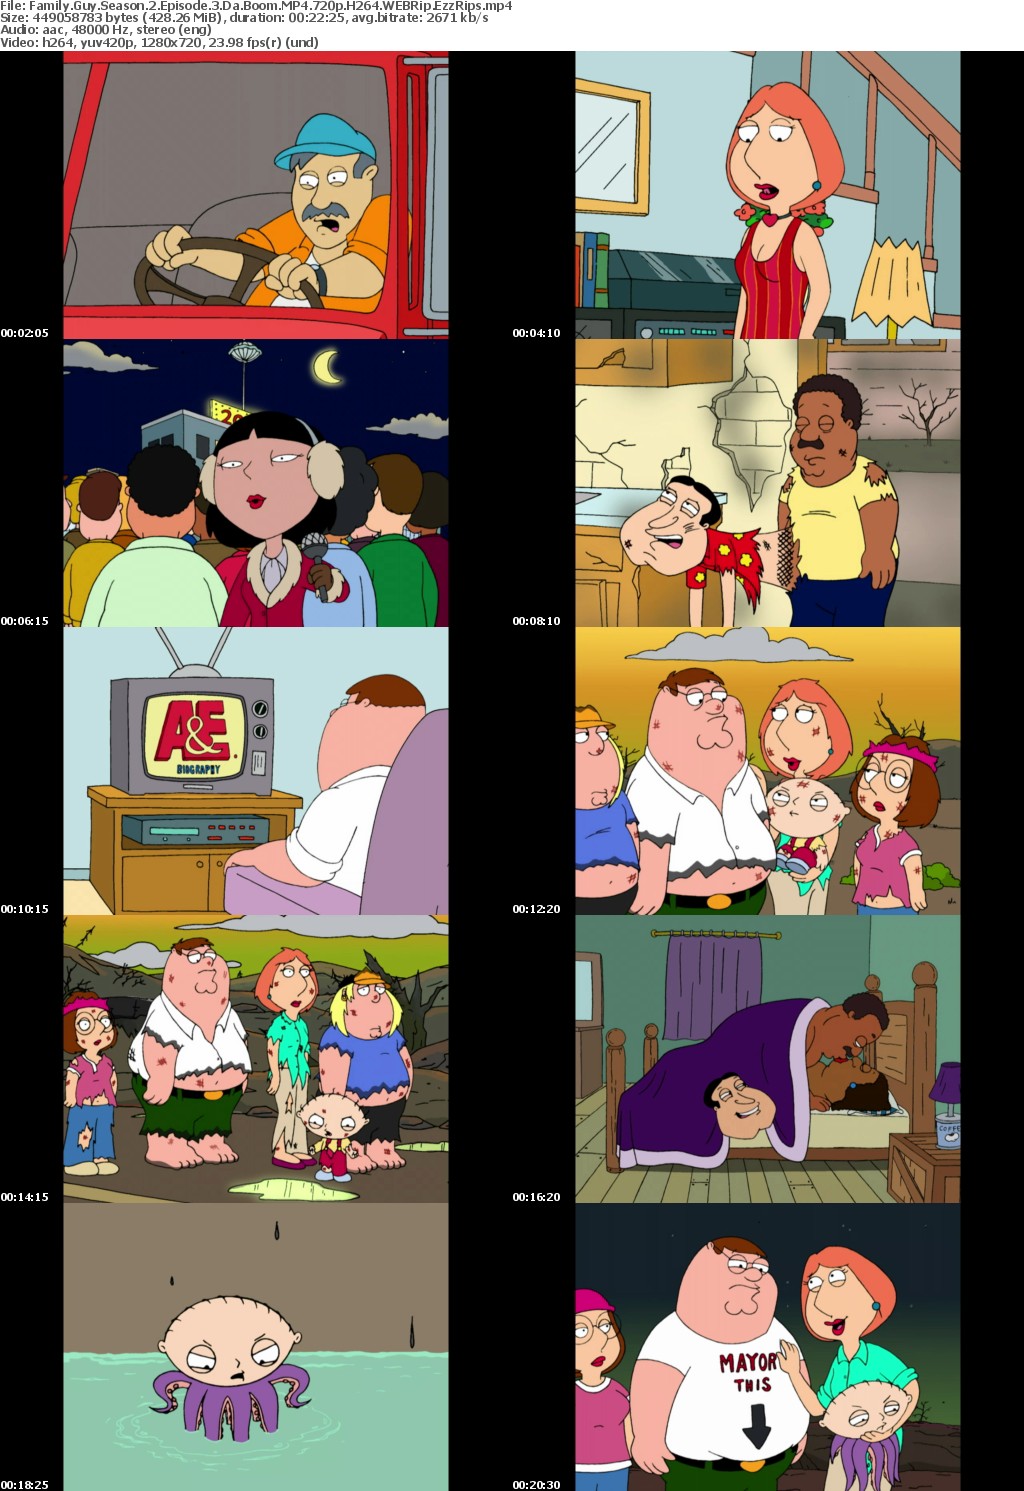 Family Guy Season 2 Episode 3 Da Boom MP4 720p H264 WEBRip EzzRips